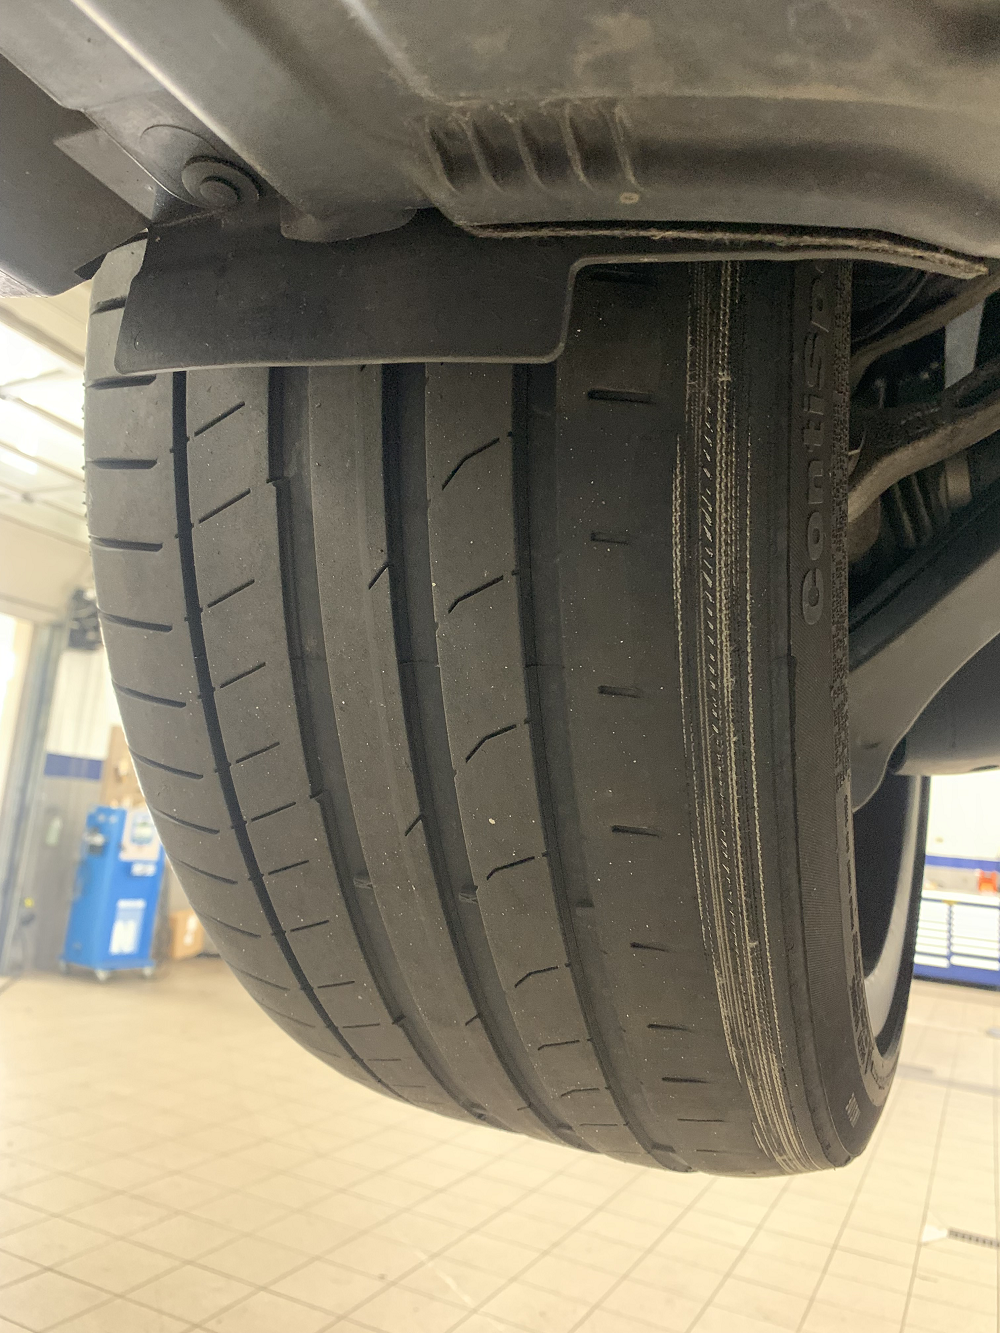 Severe Inside Rear Tire Wear -  Forums